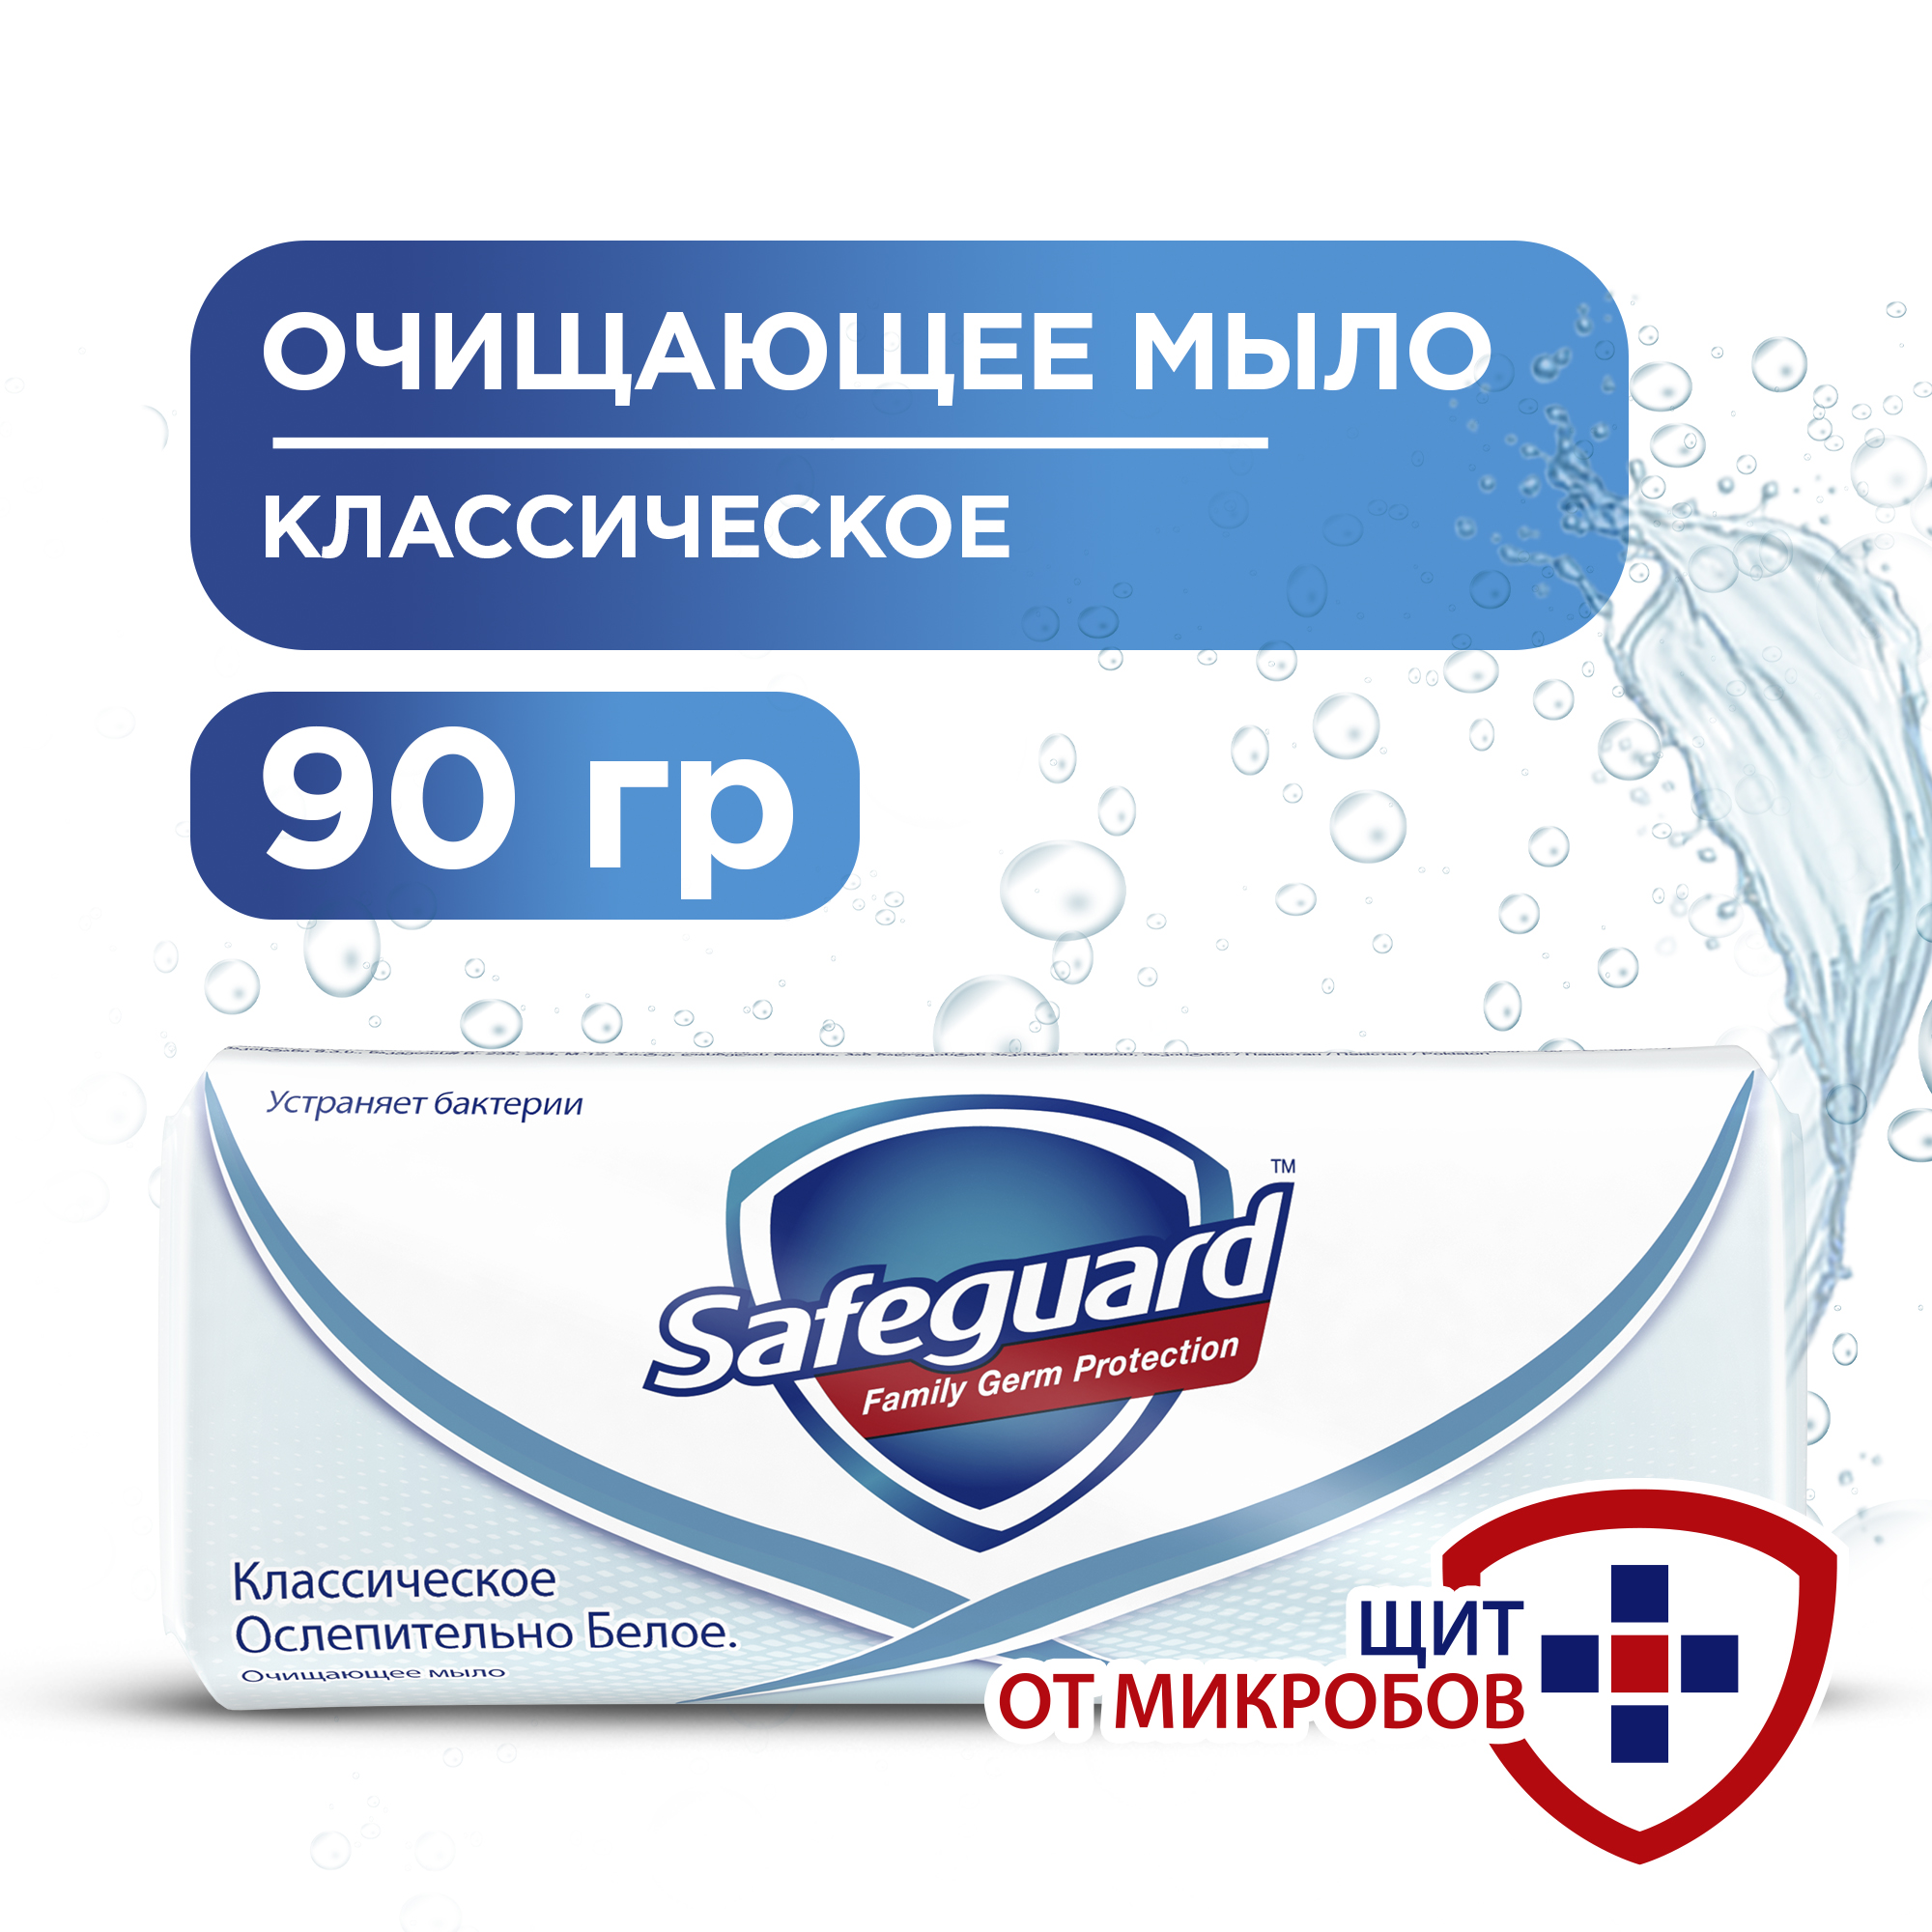 Мыло Safeguard, антибактериальное, классическое ослепительно белое 90 г. антибактериальное мыло дезодорант madame heng